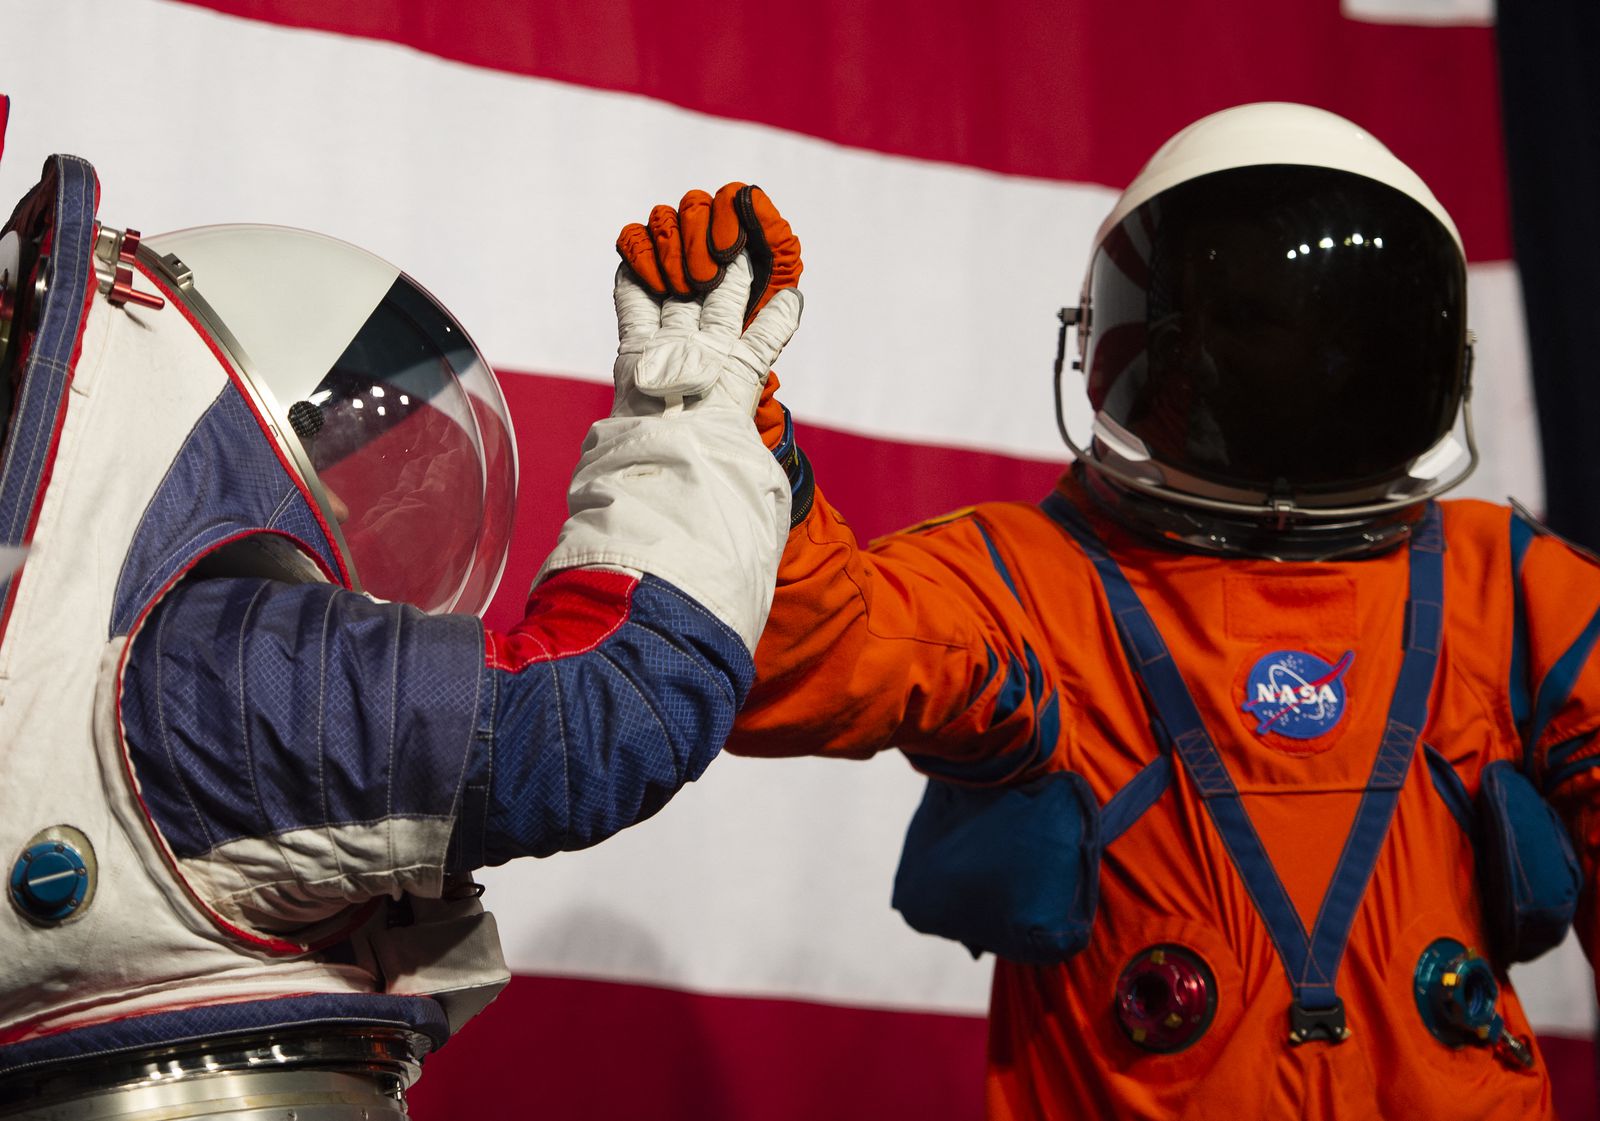 Korak bliže Mjesecu: NASA odabrala kompaniju koja će dizajnirati svemirska odijela za astronaute